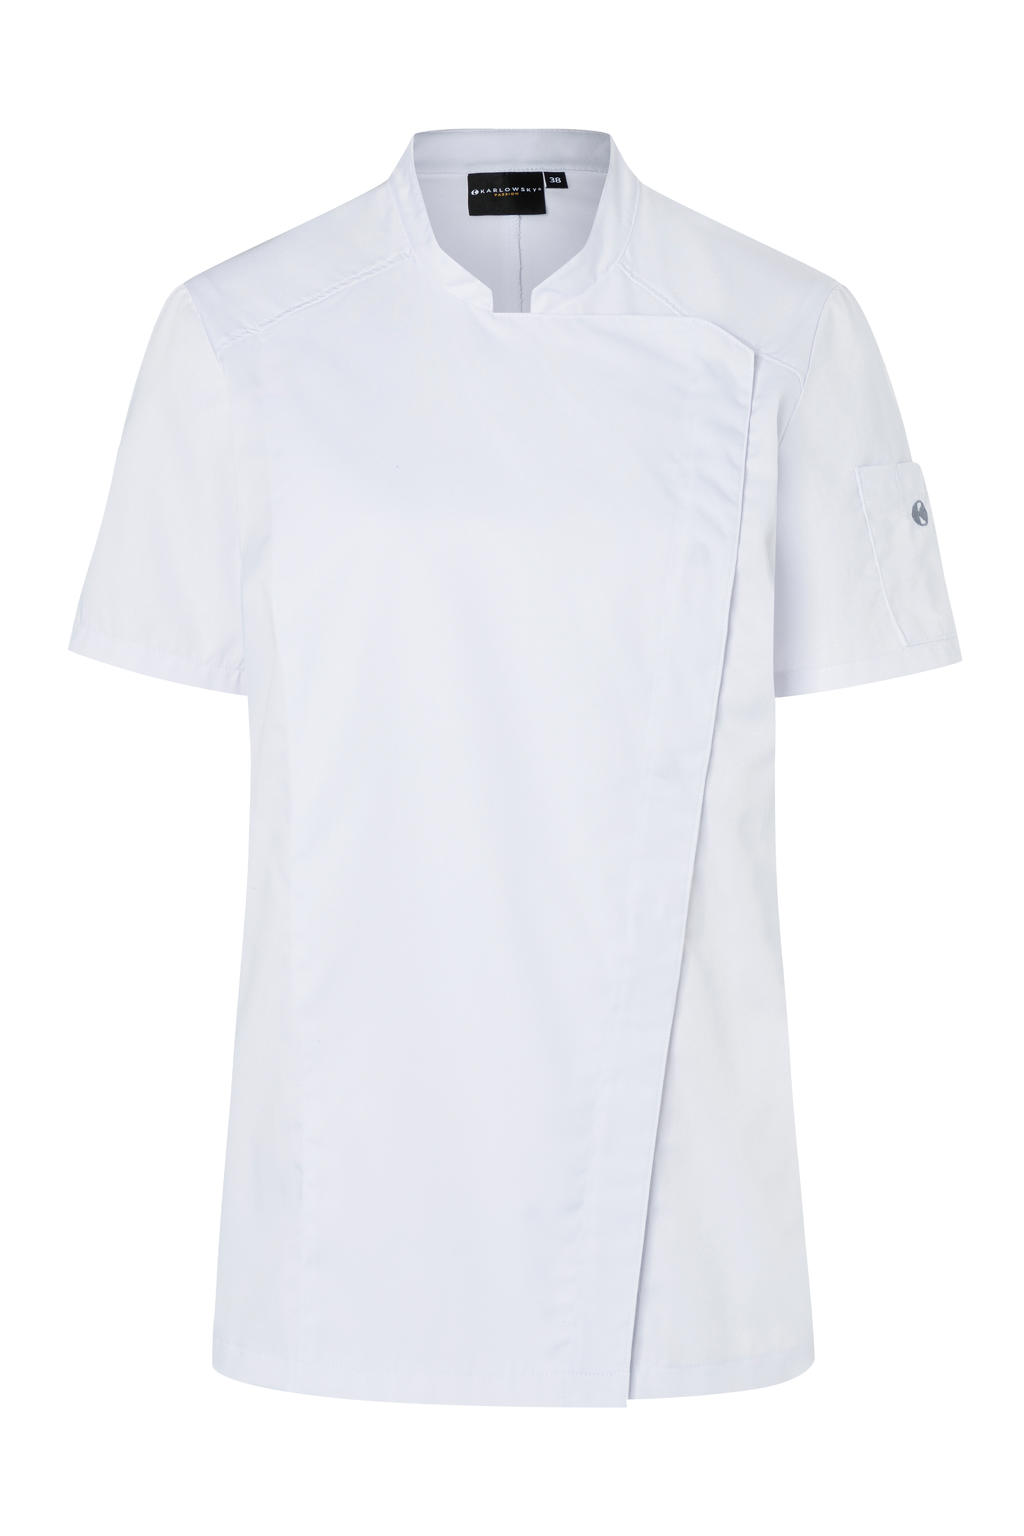 Short-Sleeve Ladies' Chef Jacket Modern-Look